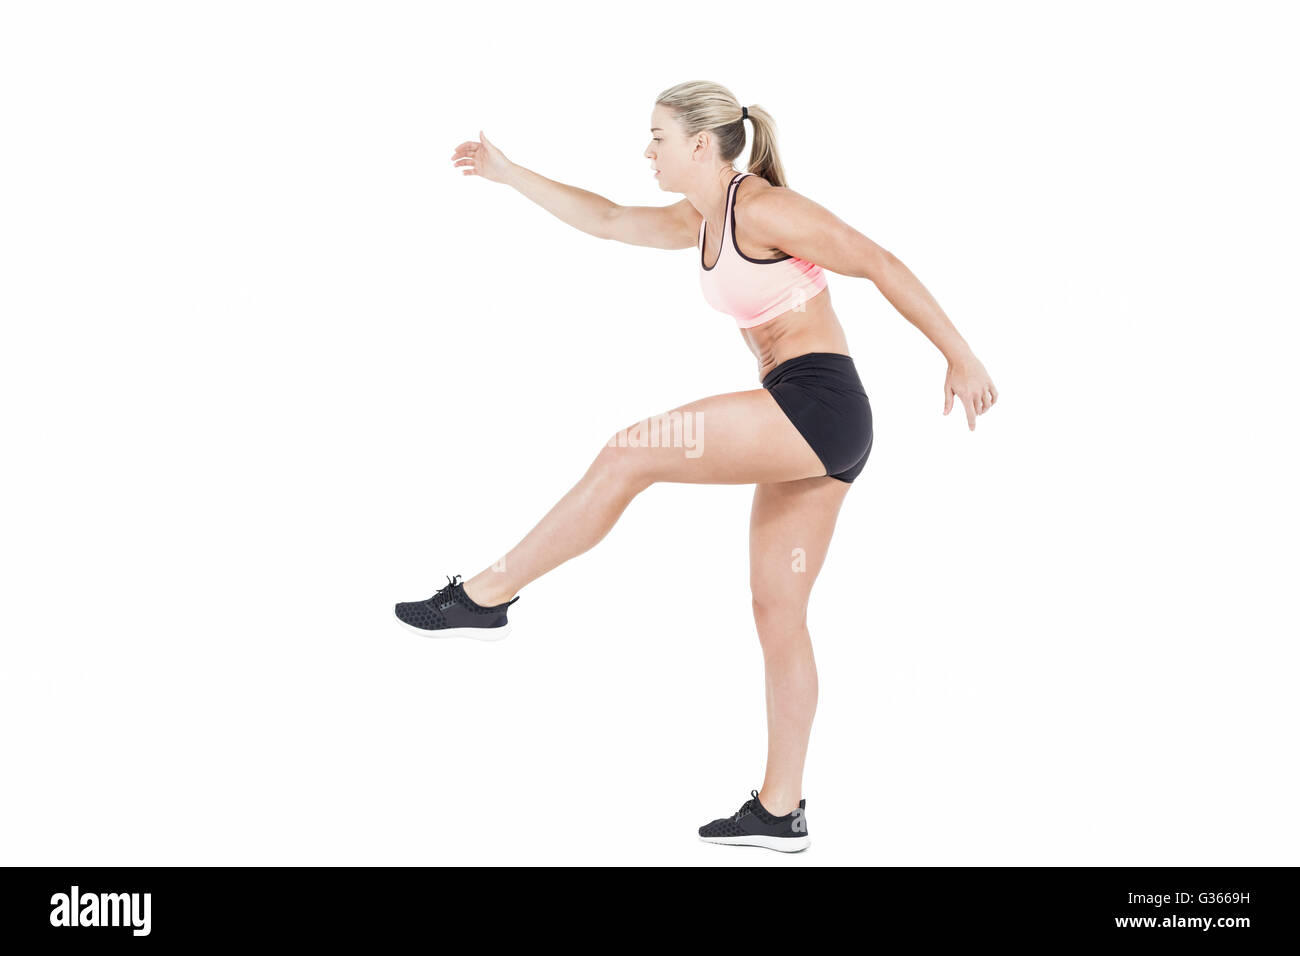 Female athlete jumping Stock Photo